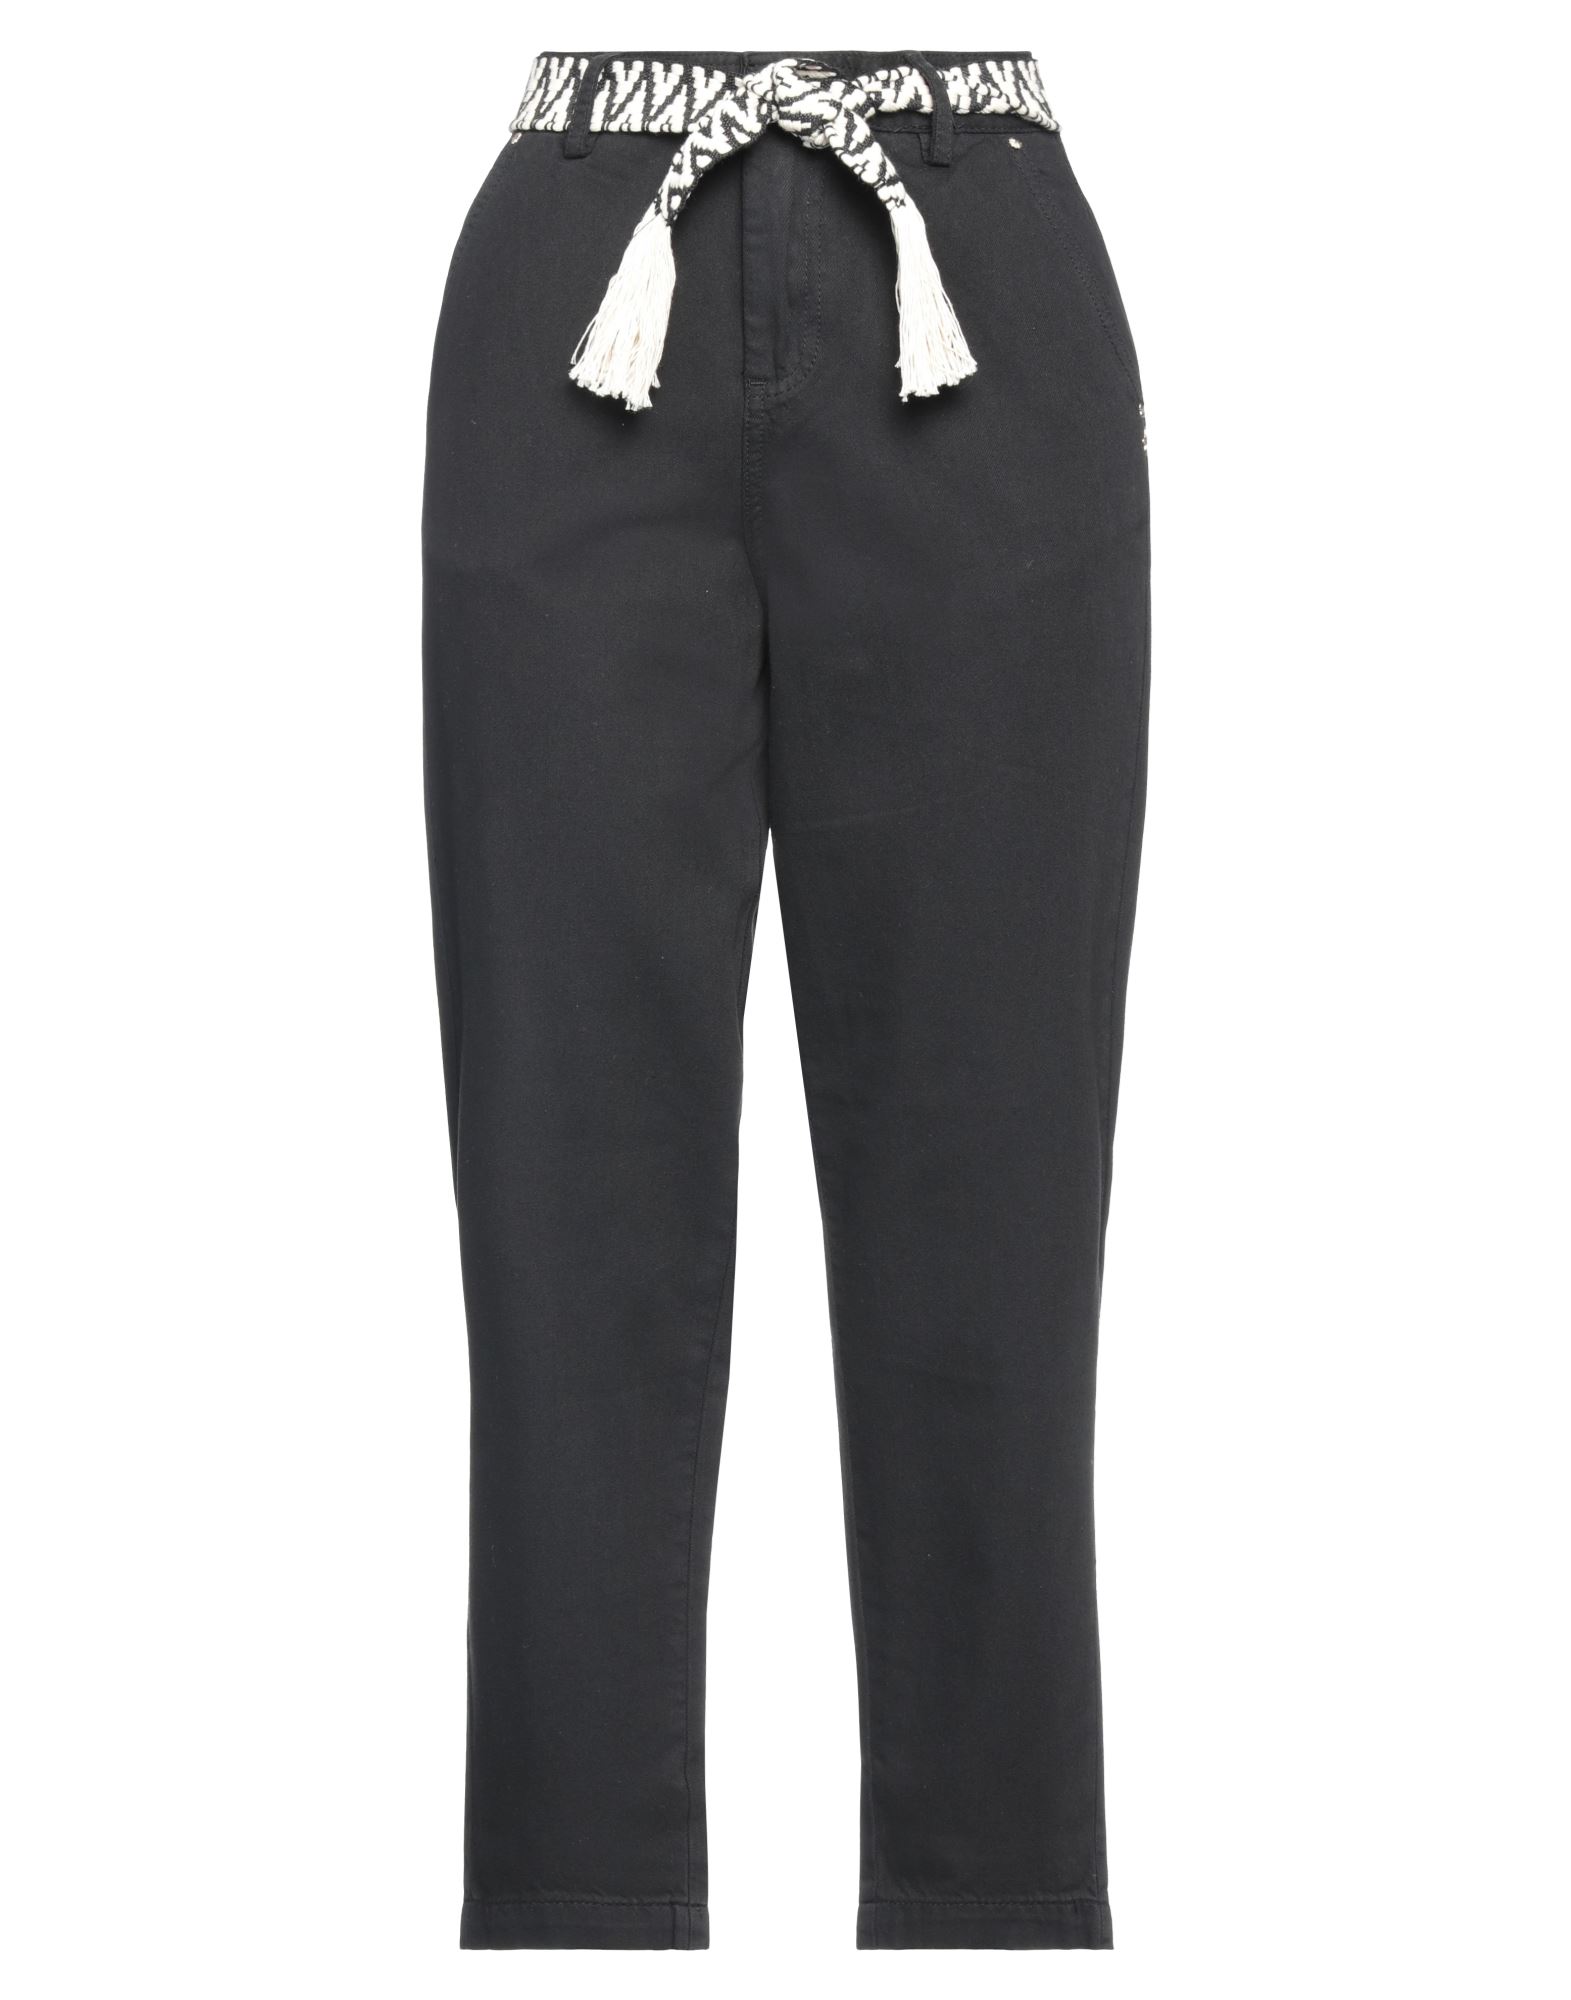 Gaudì Woman Pants Black Size 26 Cotton, Lyocell